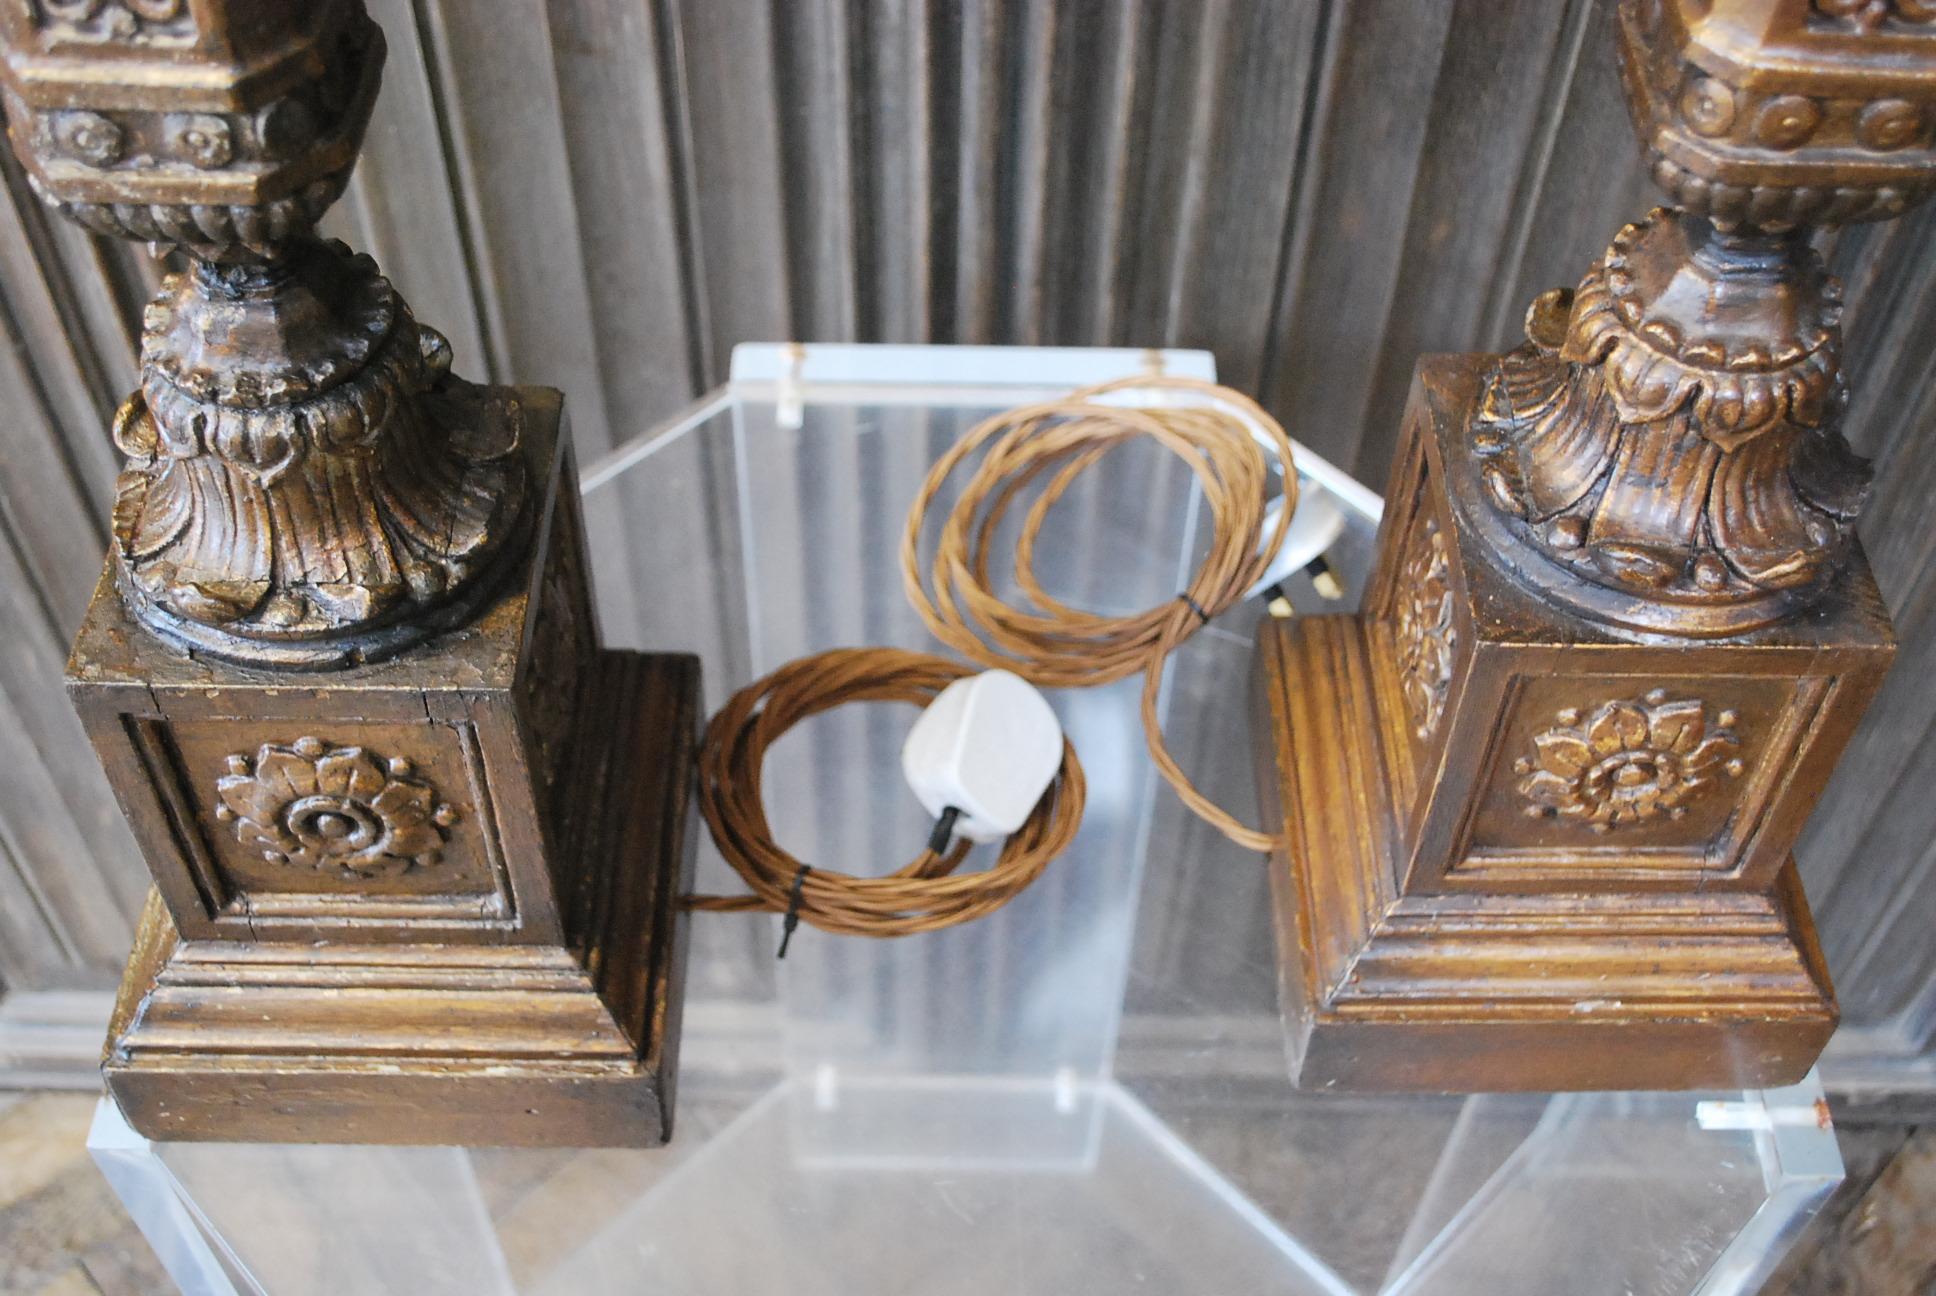 Hutton-Clarke Antiques a le plaisir de présenter une remarquable paire de lampes en bois doré sculpté, fabriquées vers 1840. Ces lampes témoignent de l'élégance intemporelle du design classique, avec une dorure à l'huile exquise sur du chêne